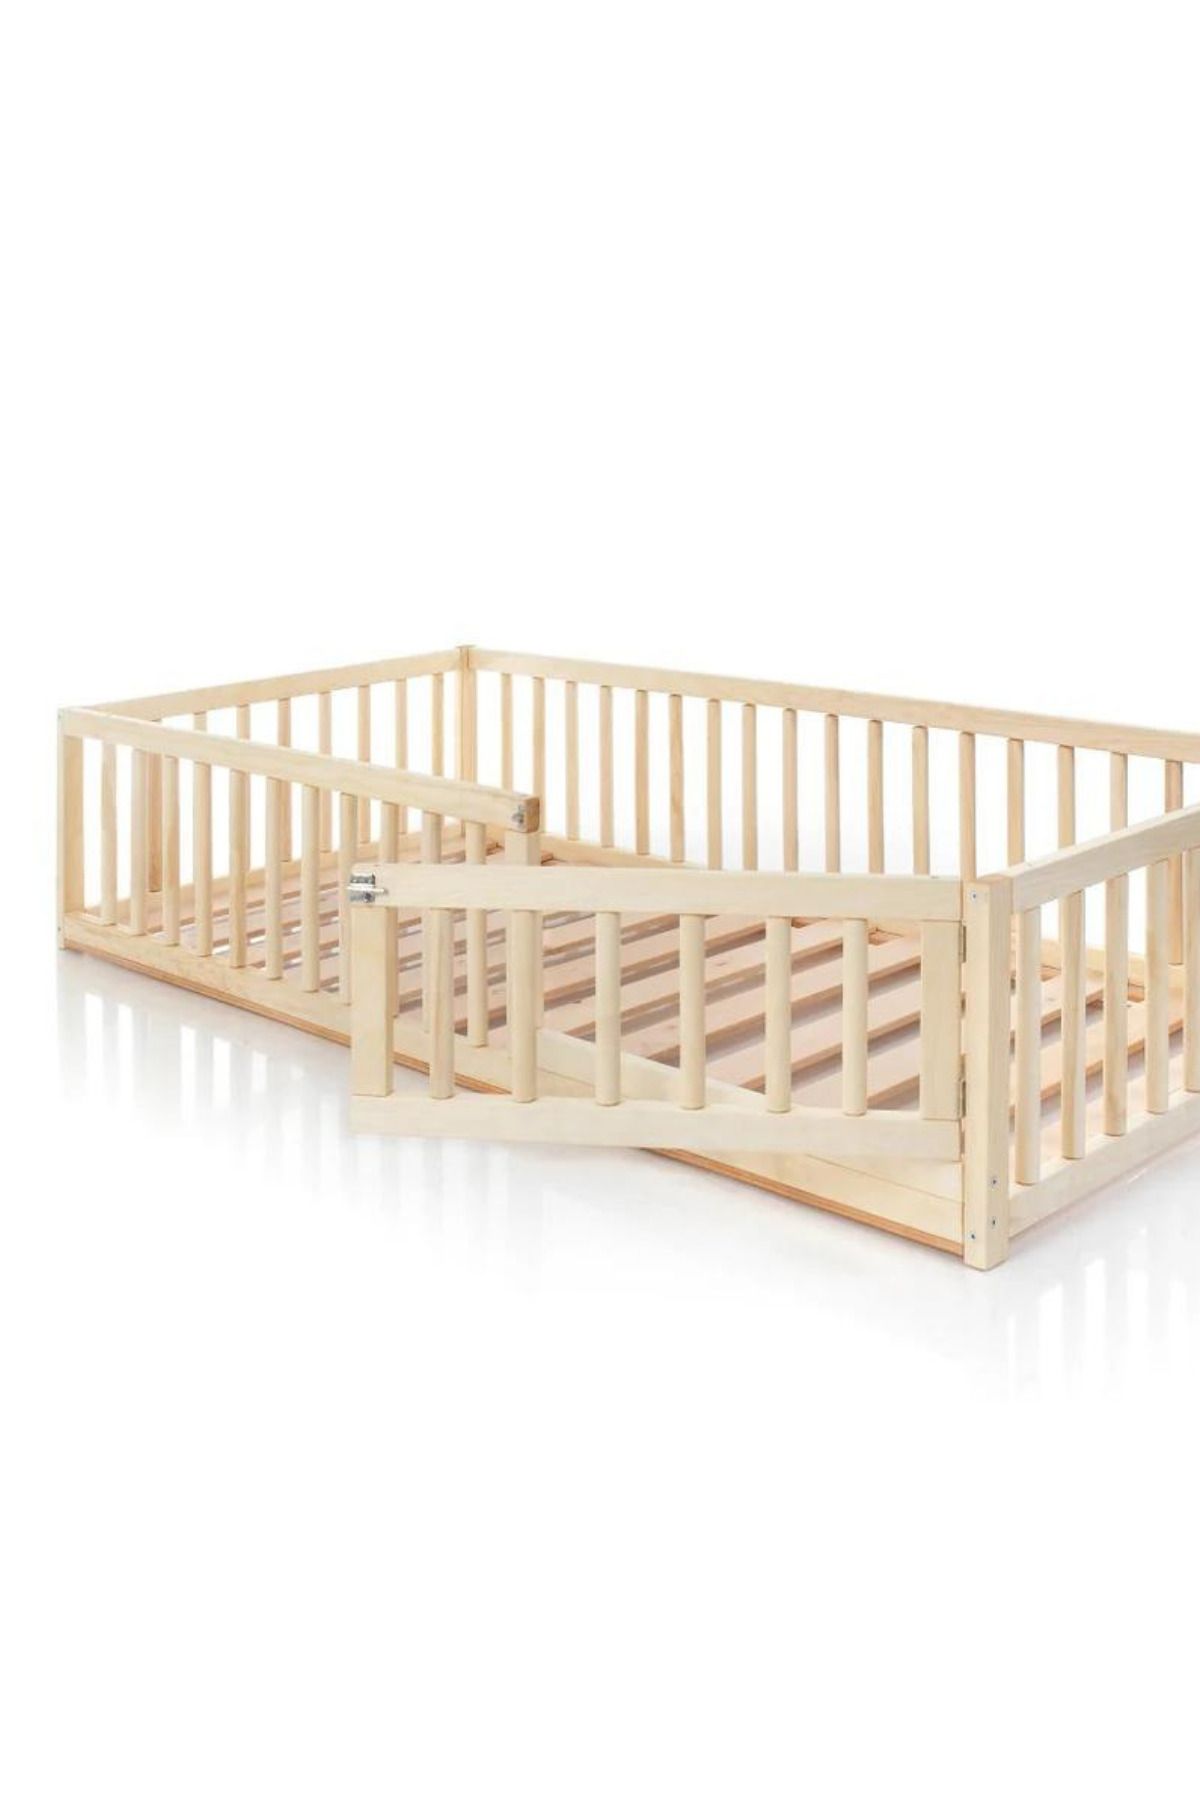 Alyones Kapılı Tüm Ölçülerde Montessori Ahşap Bebek ve Çocuk Yatağı - Unisex Karyola - Doğal Ahşap Yatak